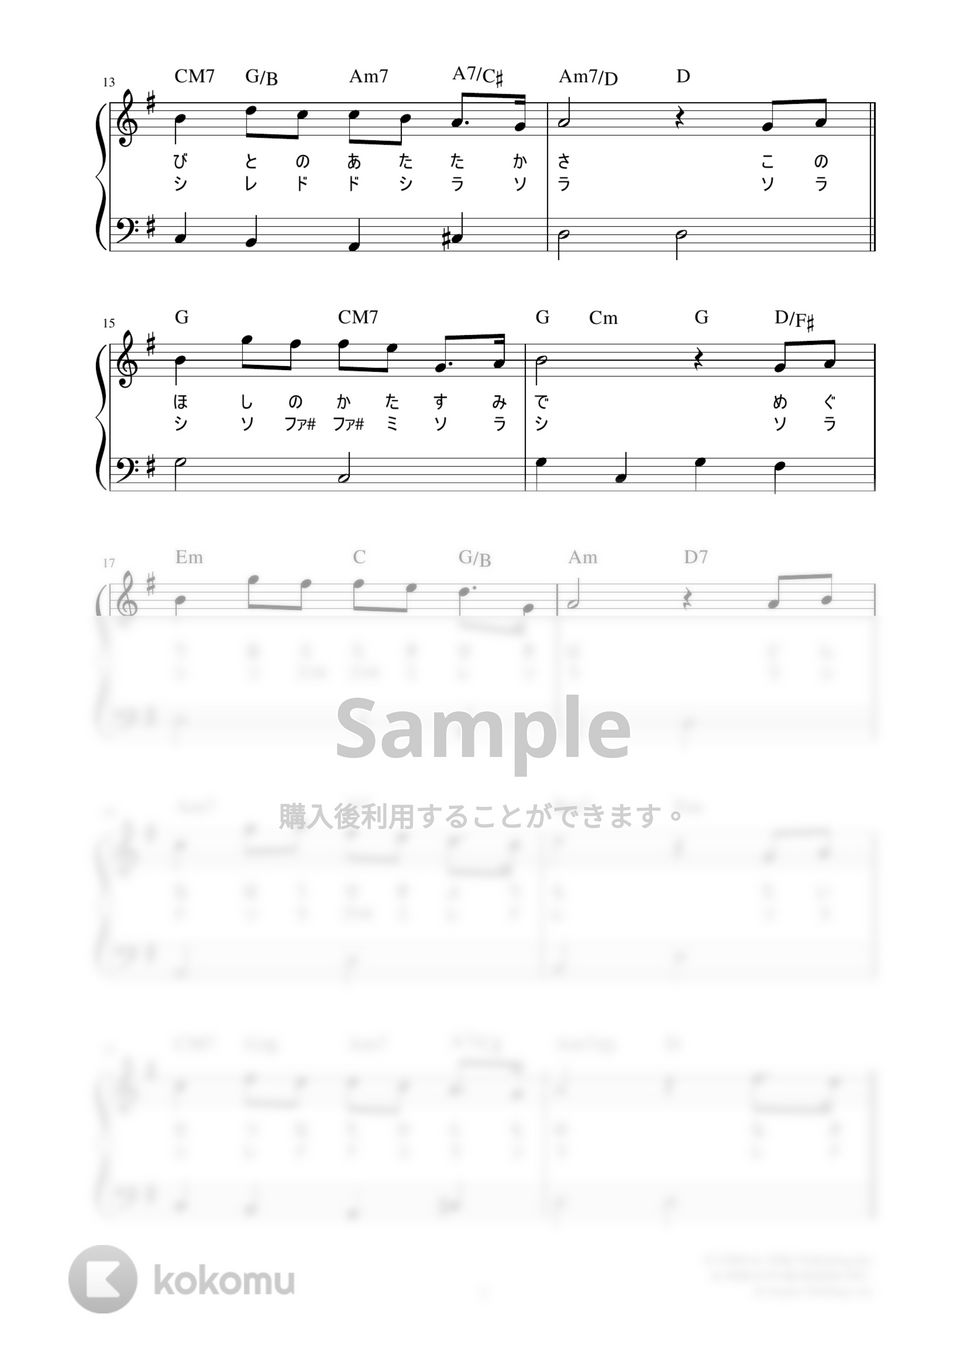 竹内まりや - いのちの歌 (かんたん / 歌詞付き / ドレミ付き / 初心者) by piano.tokyo